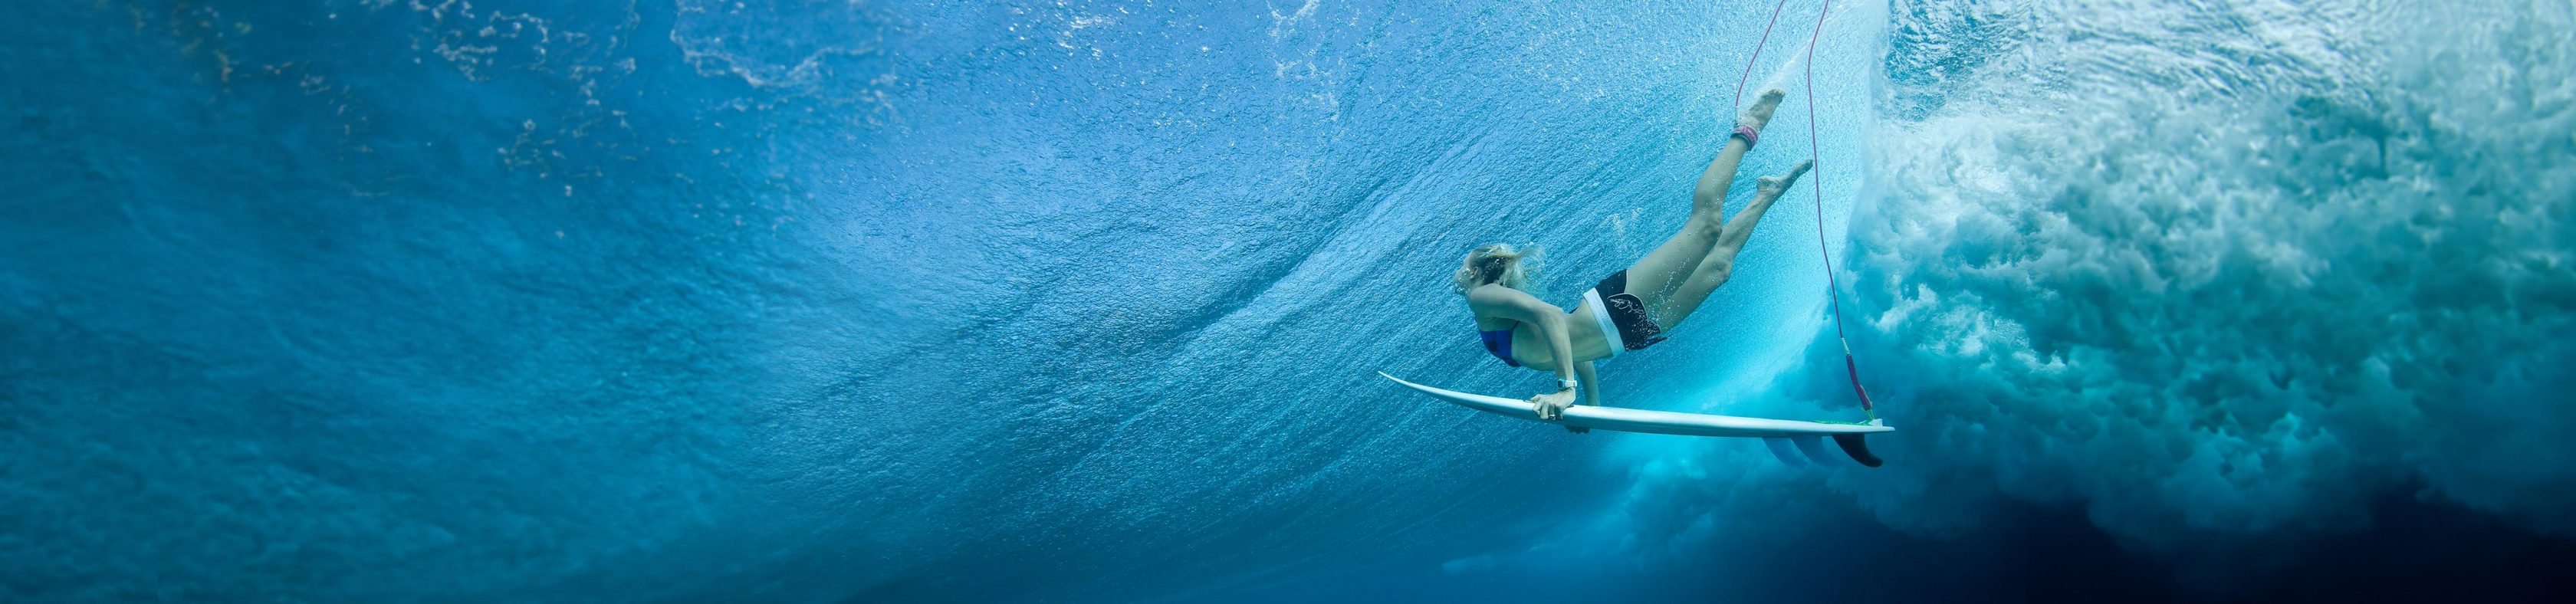 Surferin mit Surfboard unter Wasser